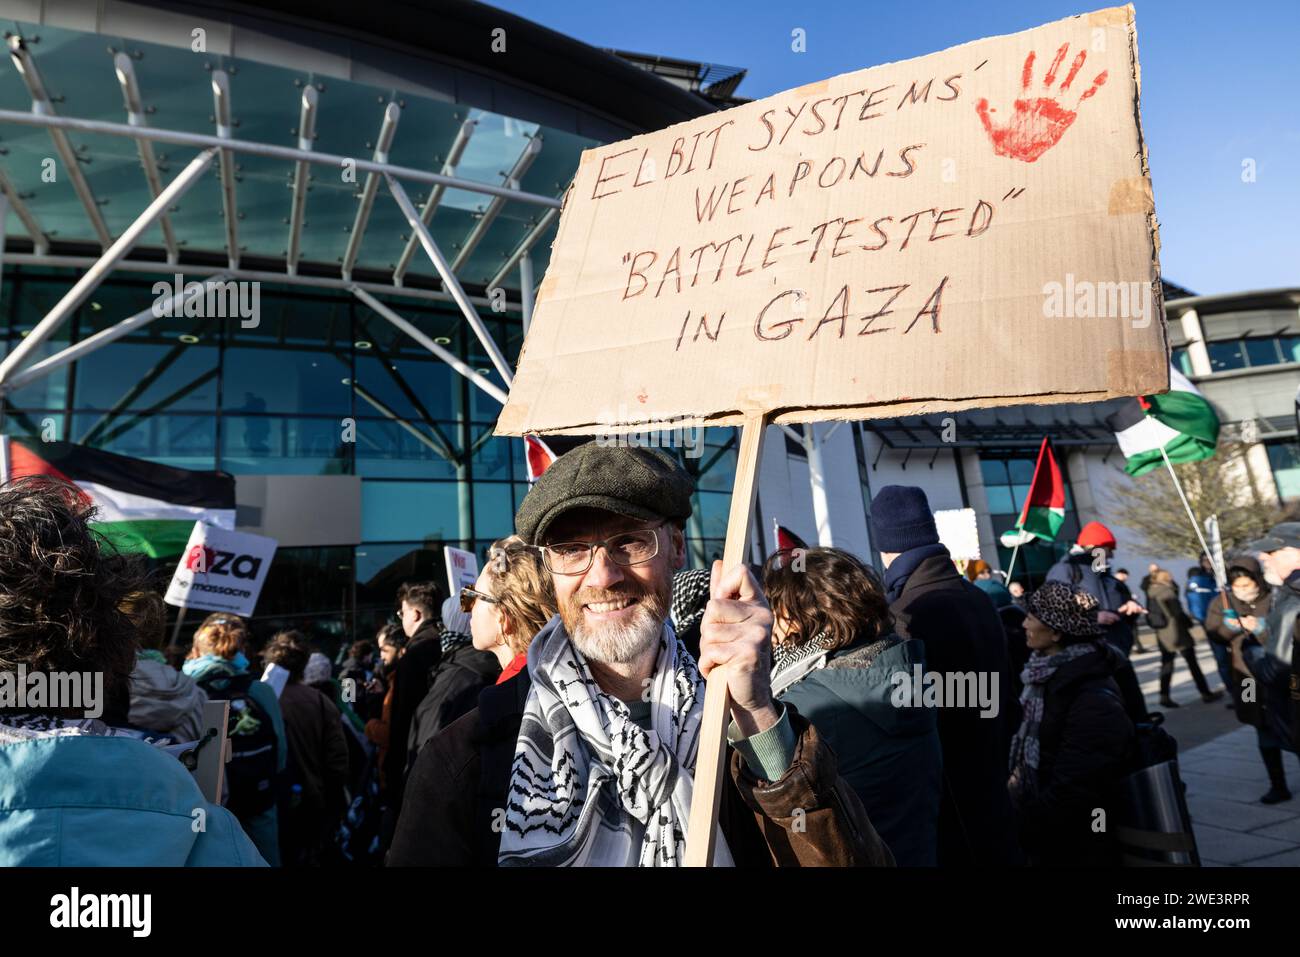 Manifestants pro-palestiniens Palestine ACTION PALESTINE prend part à une manifestation contre une exposition d'armes militaires au Twickenham Rugby Stadium, dans le sud-ouest de Londres. Banque D'Images